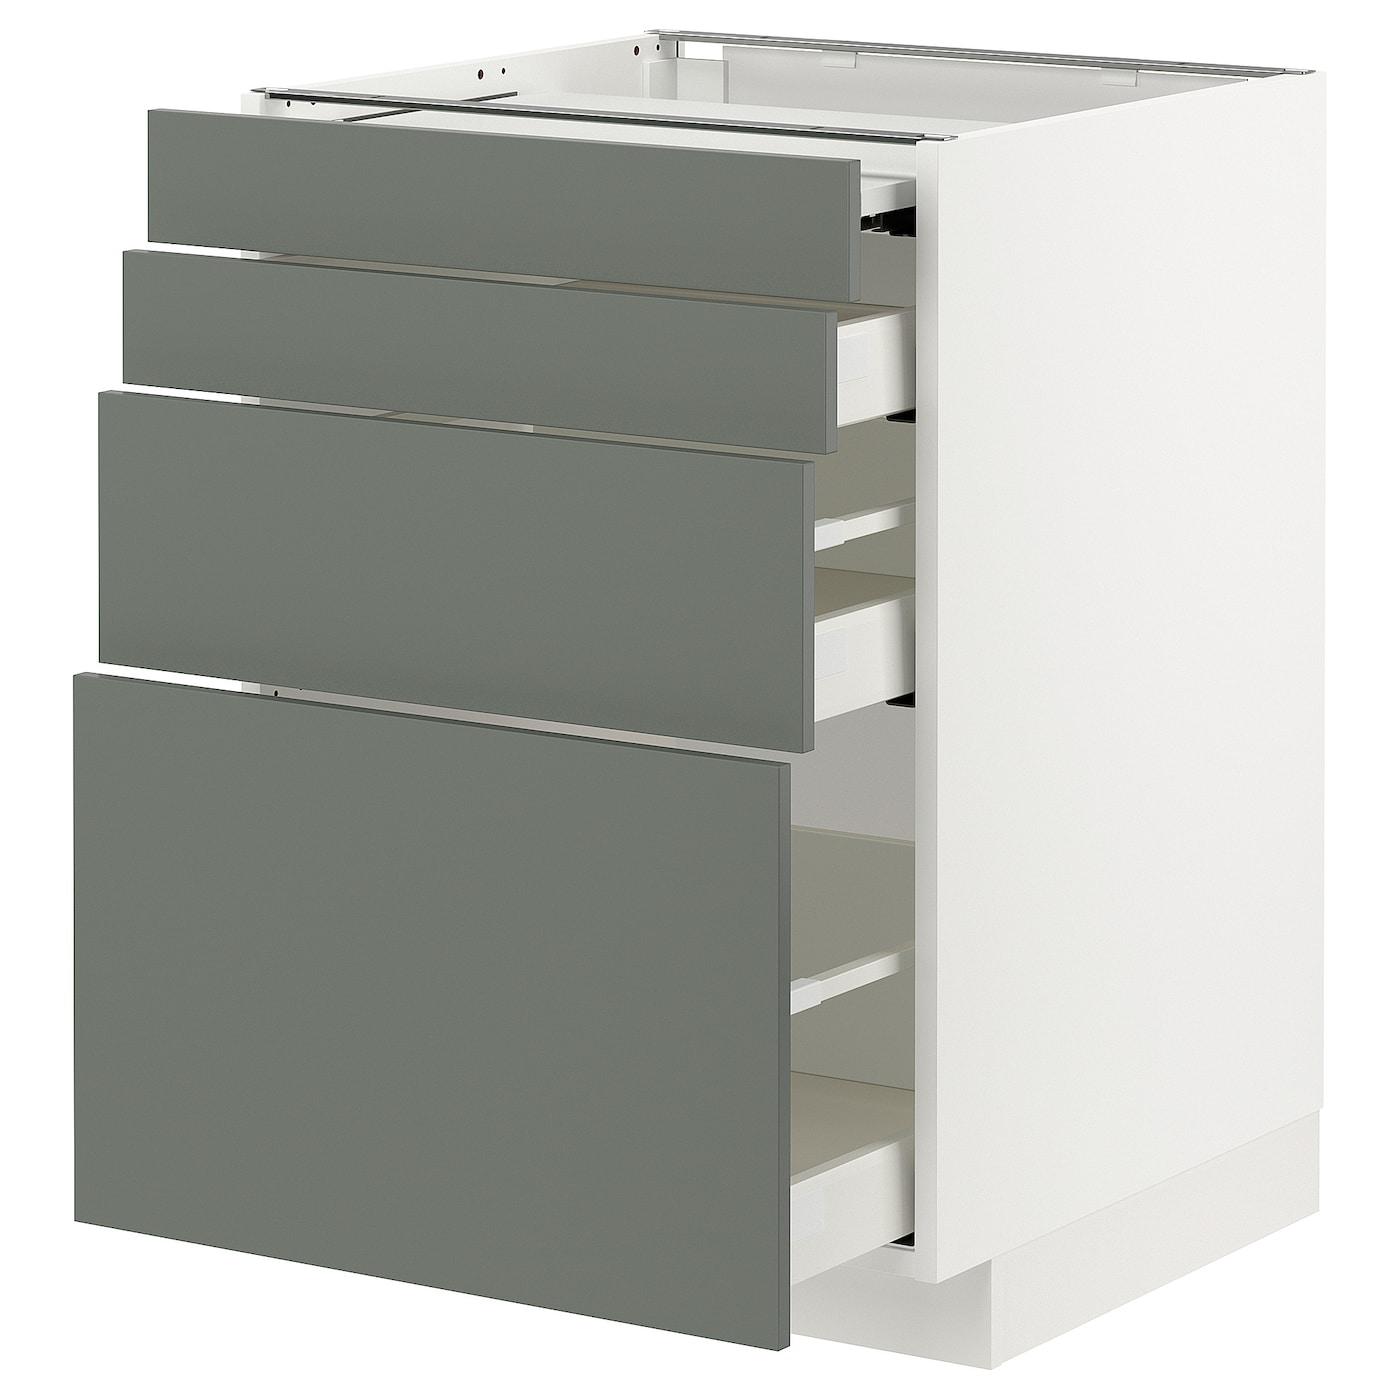 Напольный шкаф - METOD / MAXIMERA IKEA/ МЕТОД/ МАКСИМЕРА ИКЕА,  88х60 см, белый/зеленый